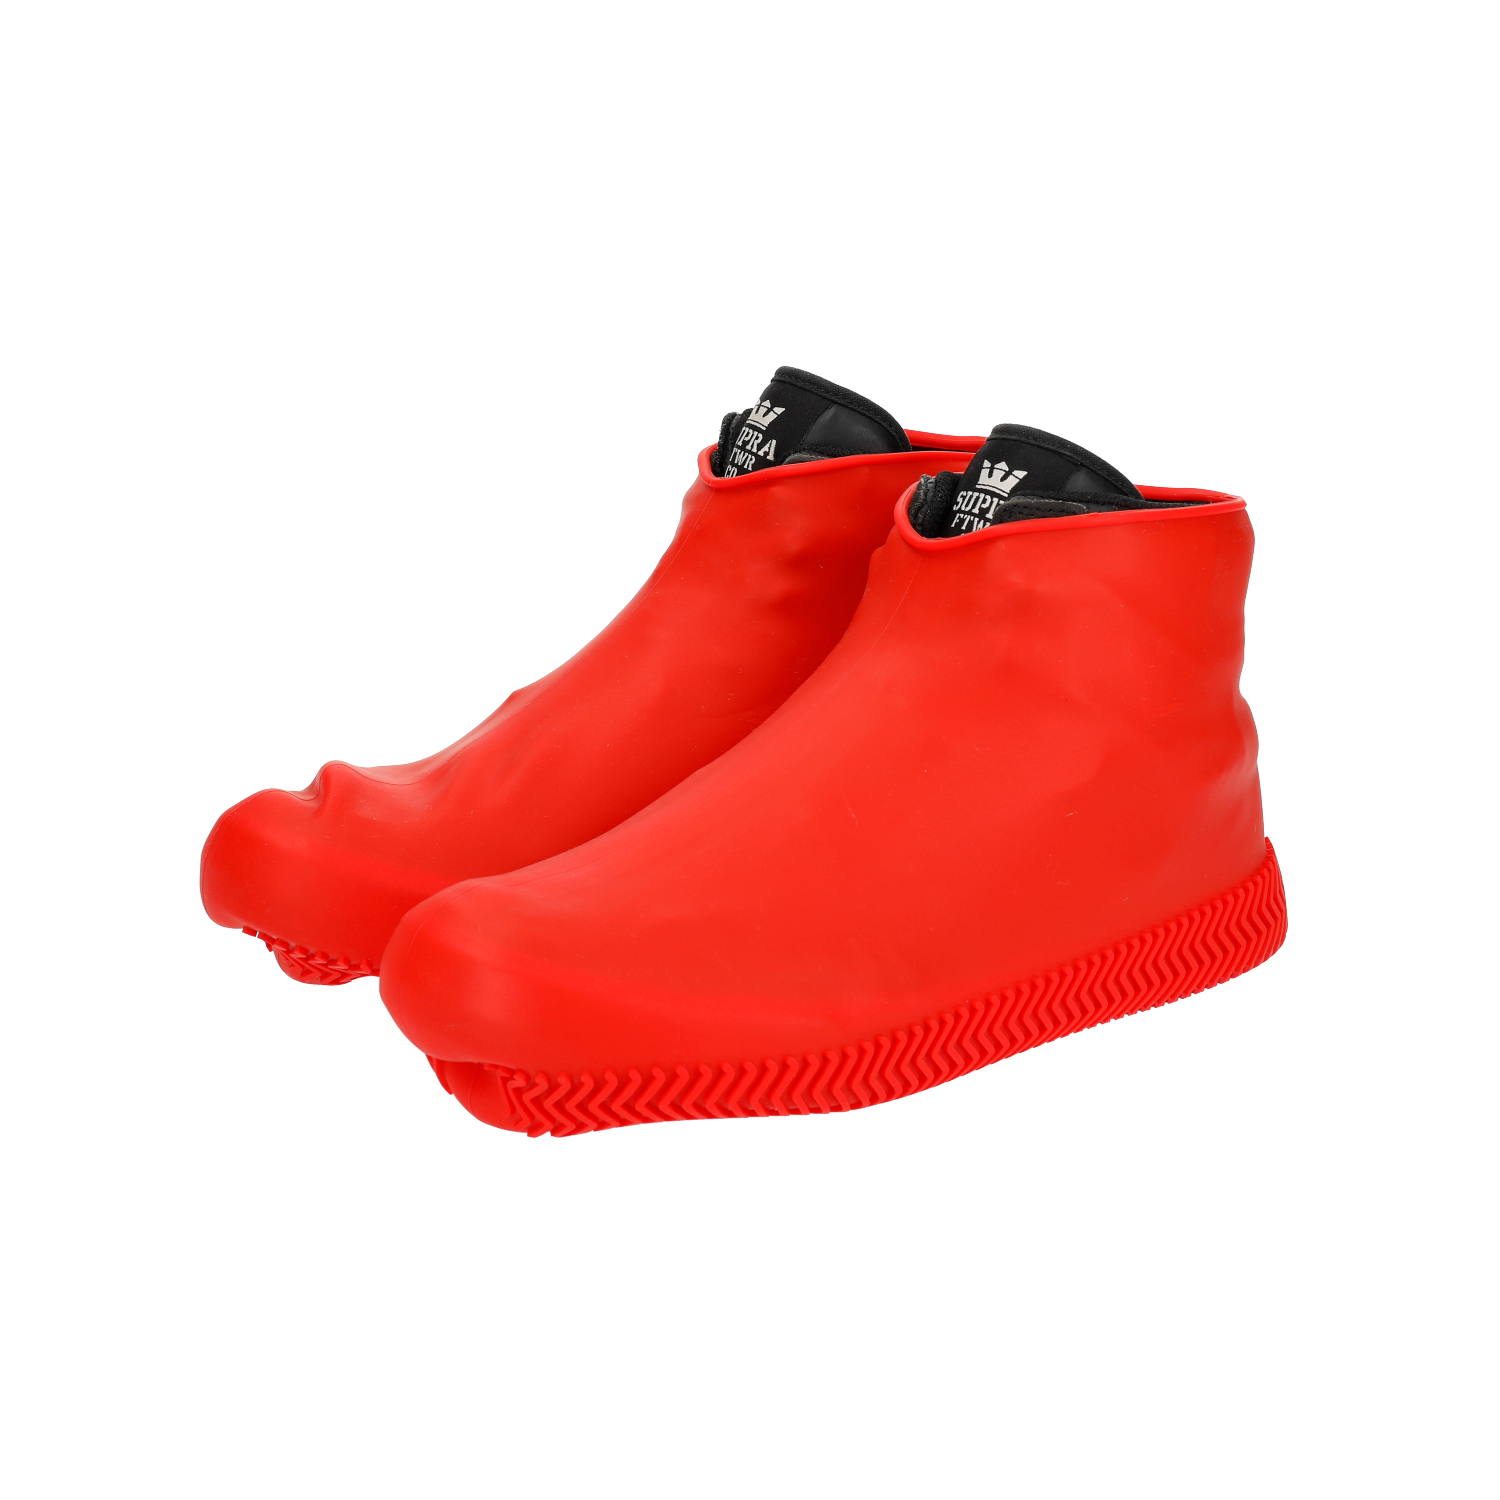 DEF 防水鞋套 DEF-SC1 红色